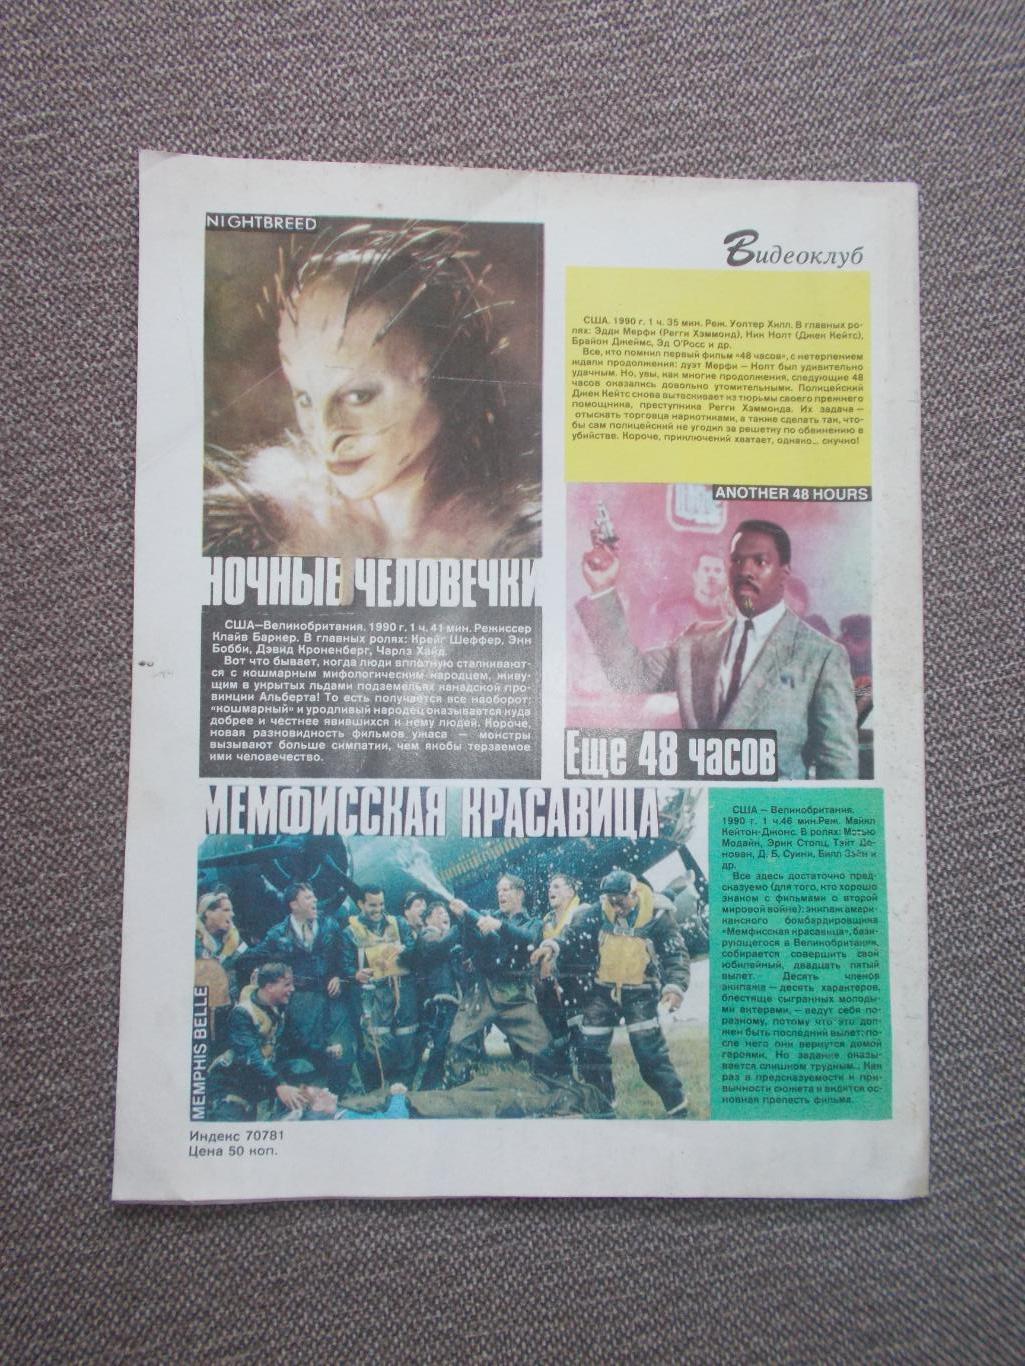 Журнал СССР :Ровесник№ 3 (март) 1991 г. (Молодежный музыкальный журнал) 1